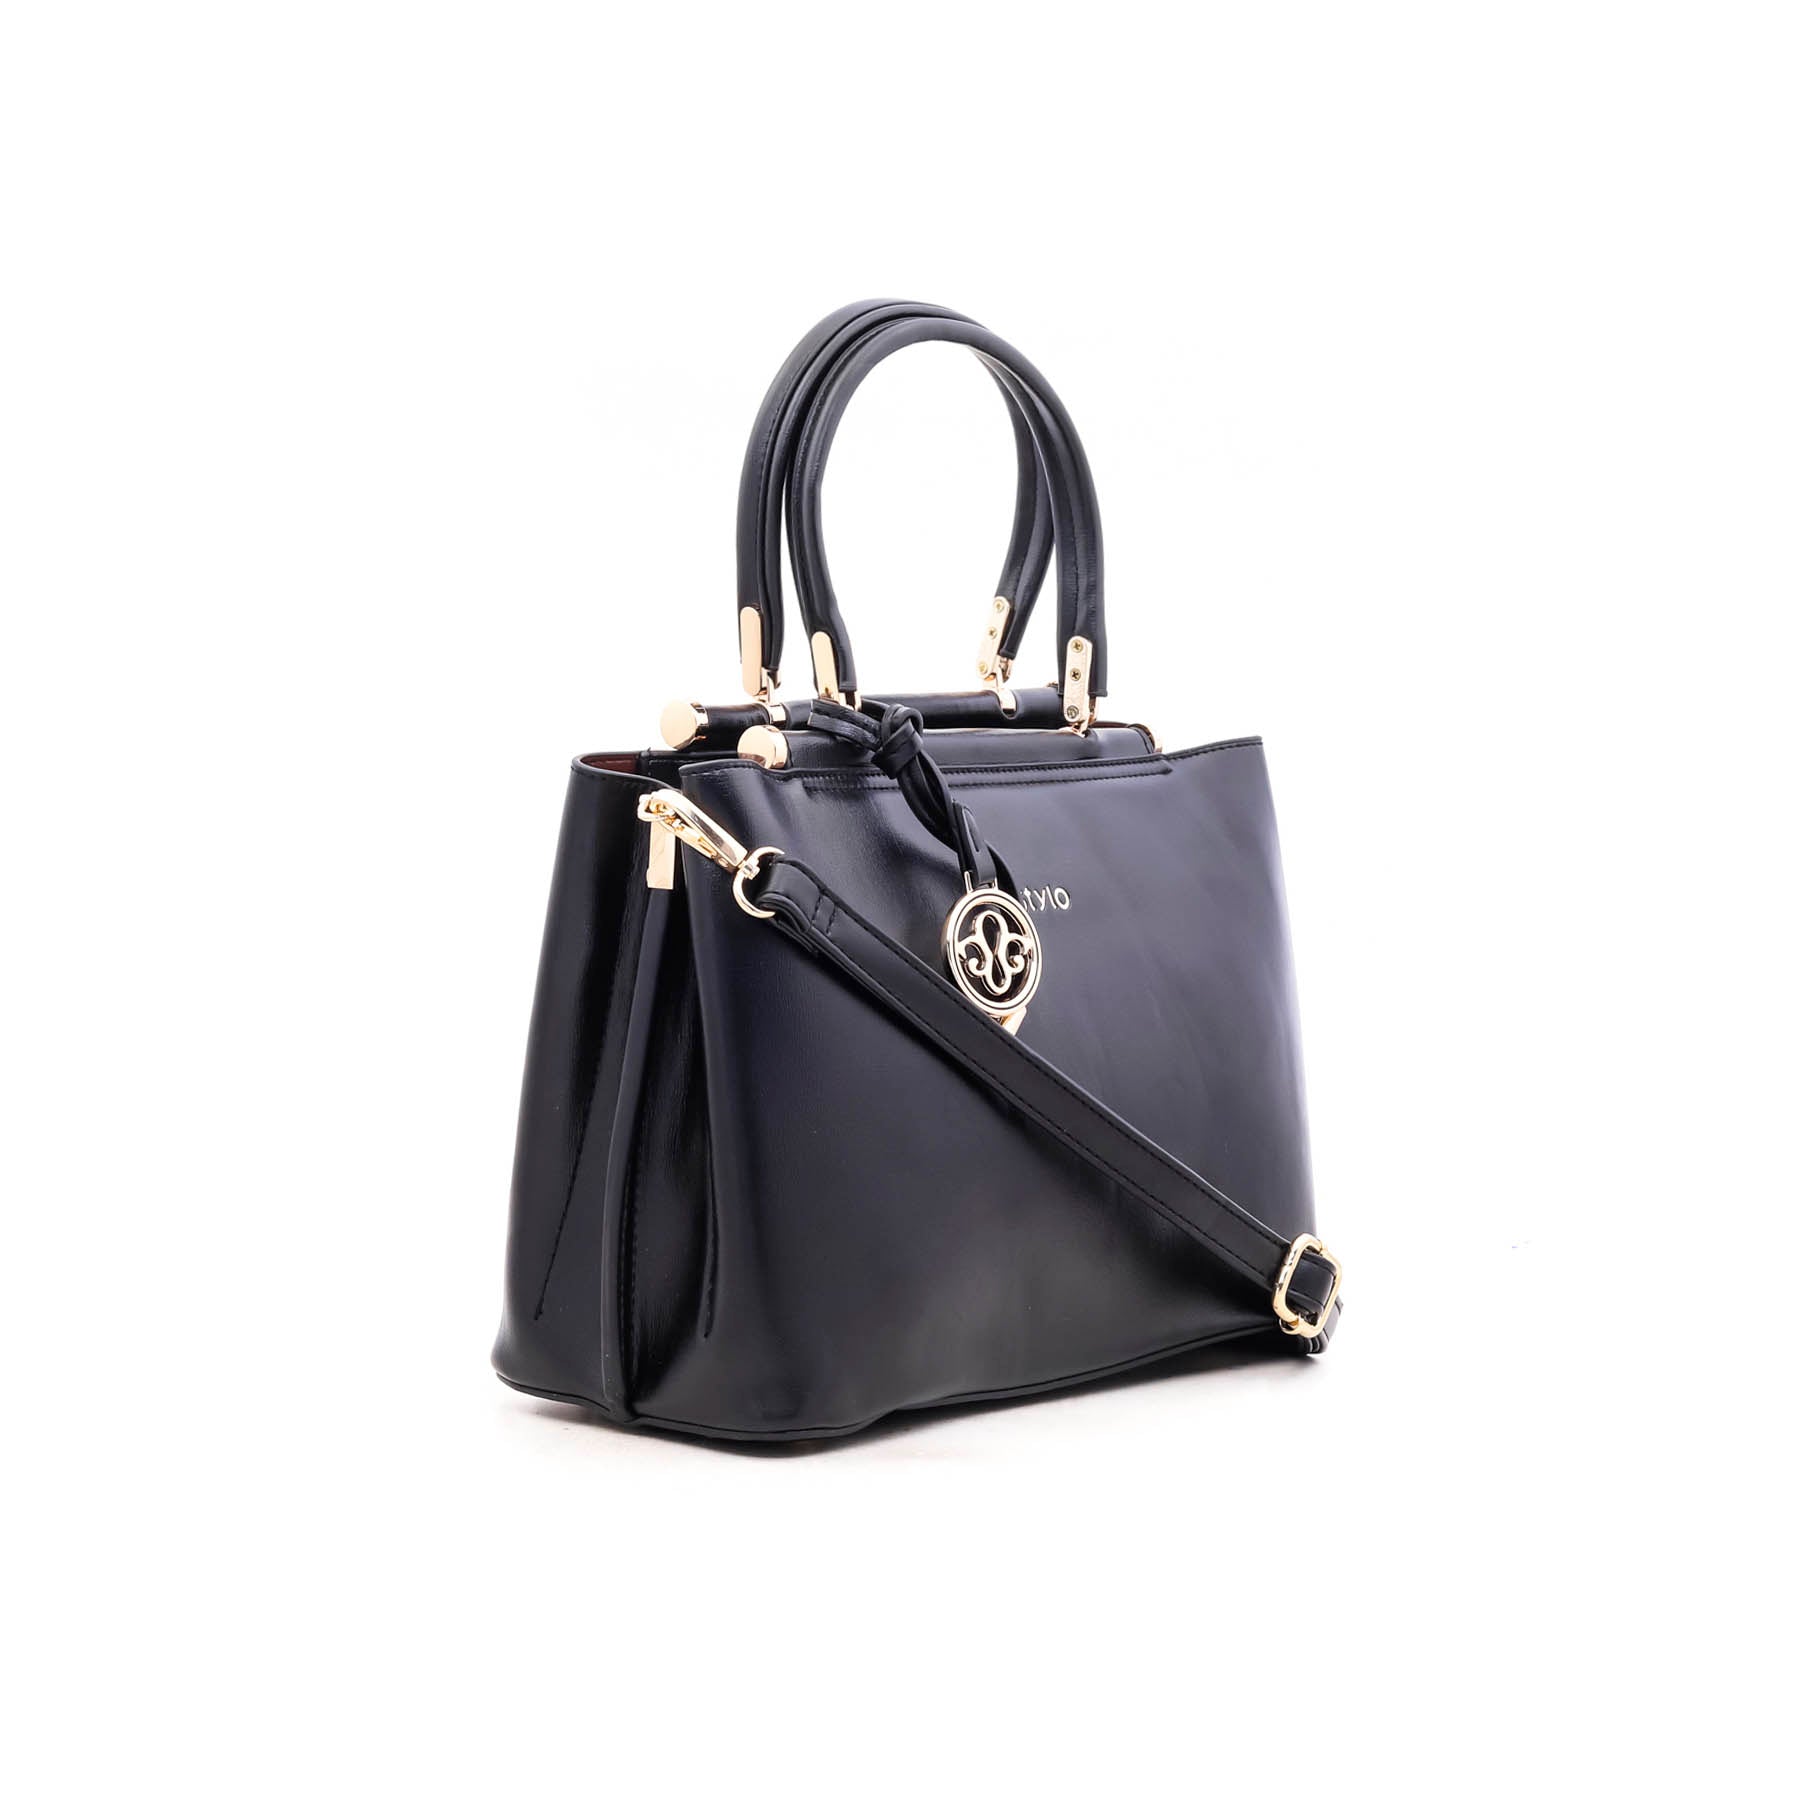 Black Formal Hand Bag P35239